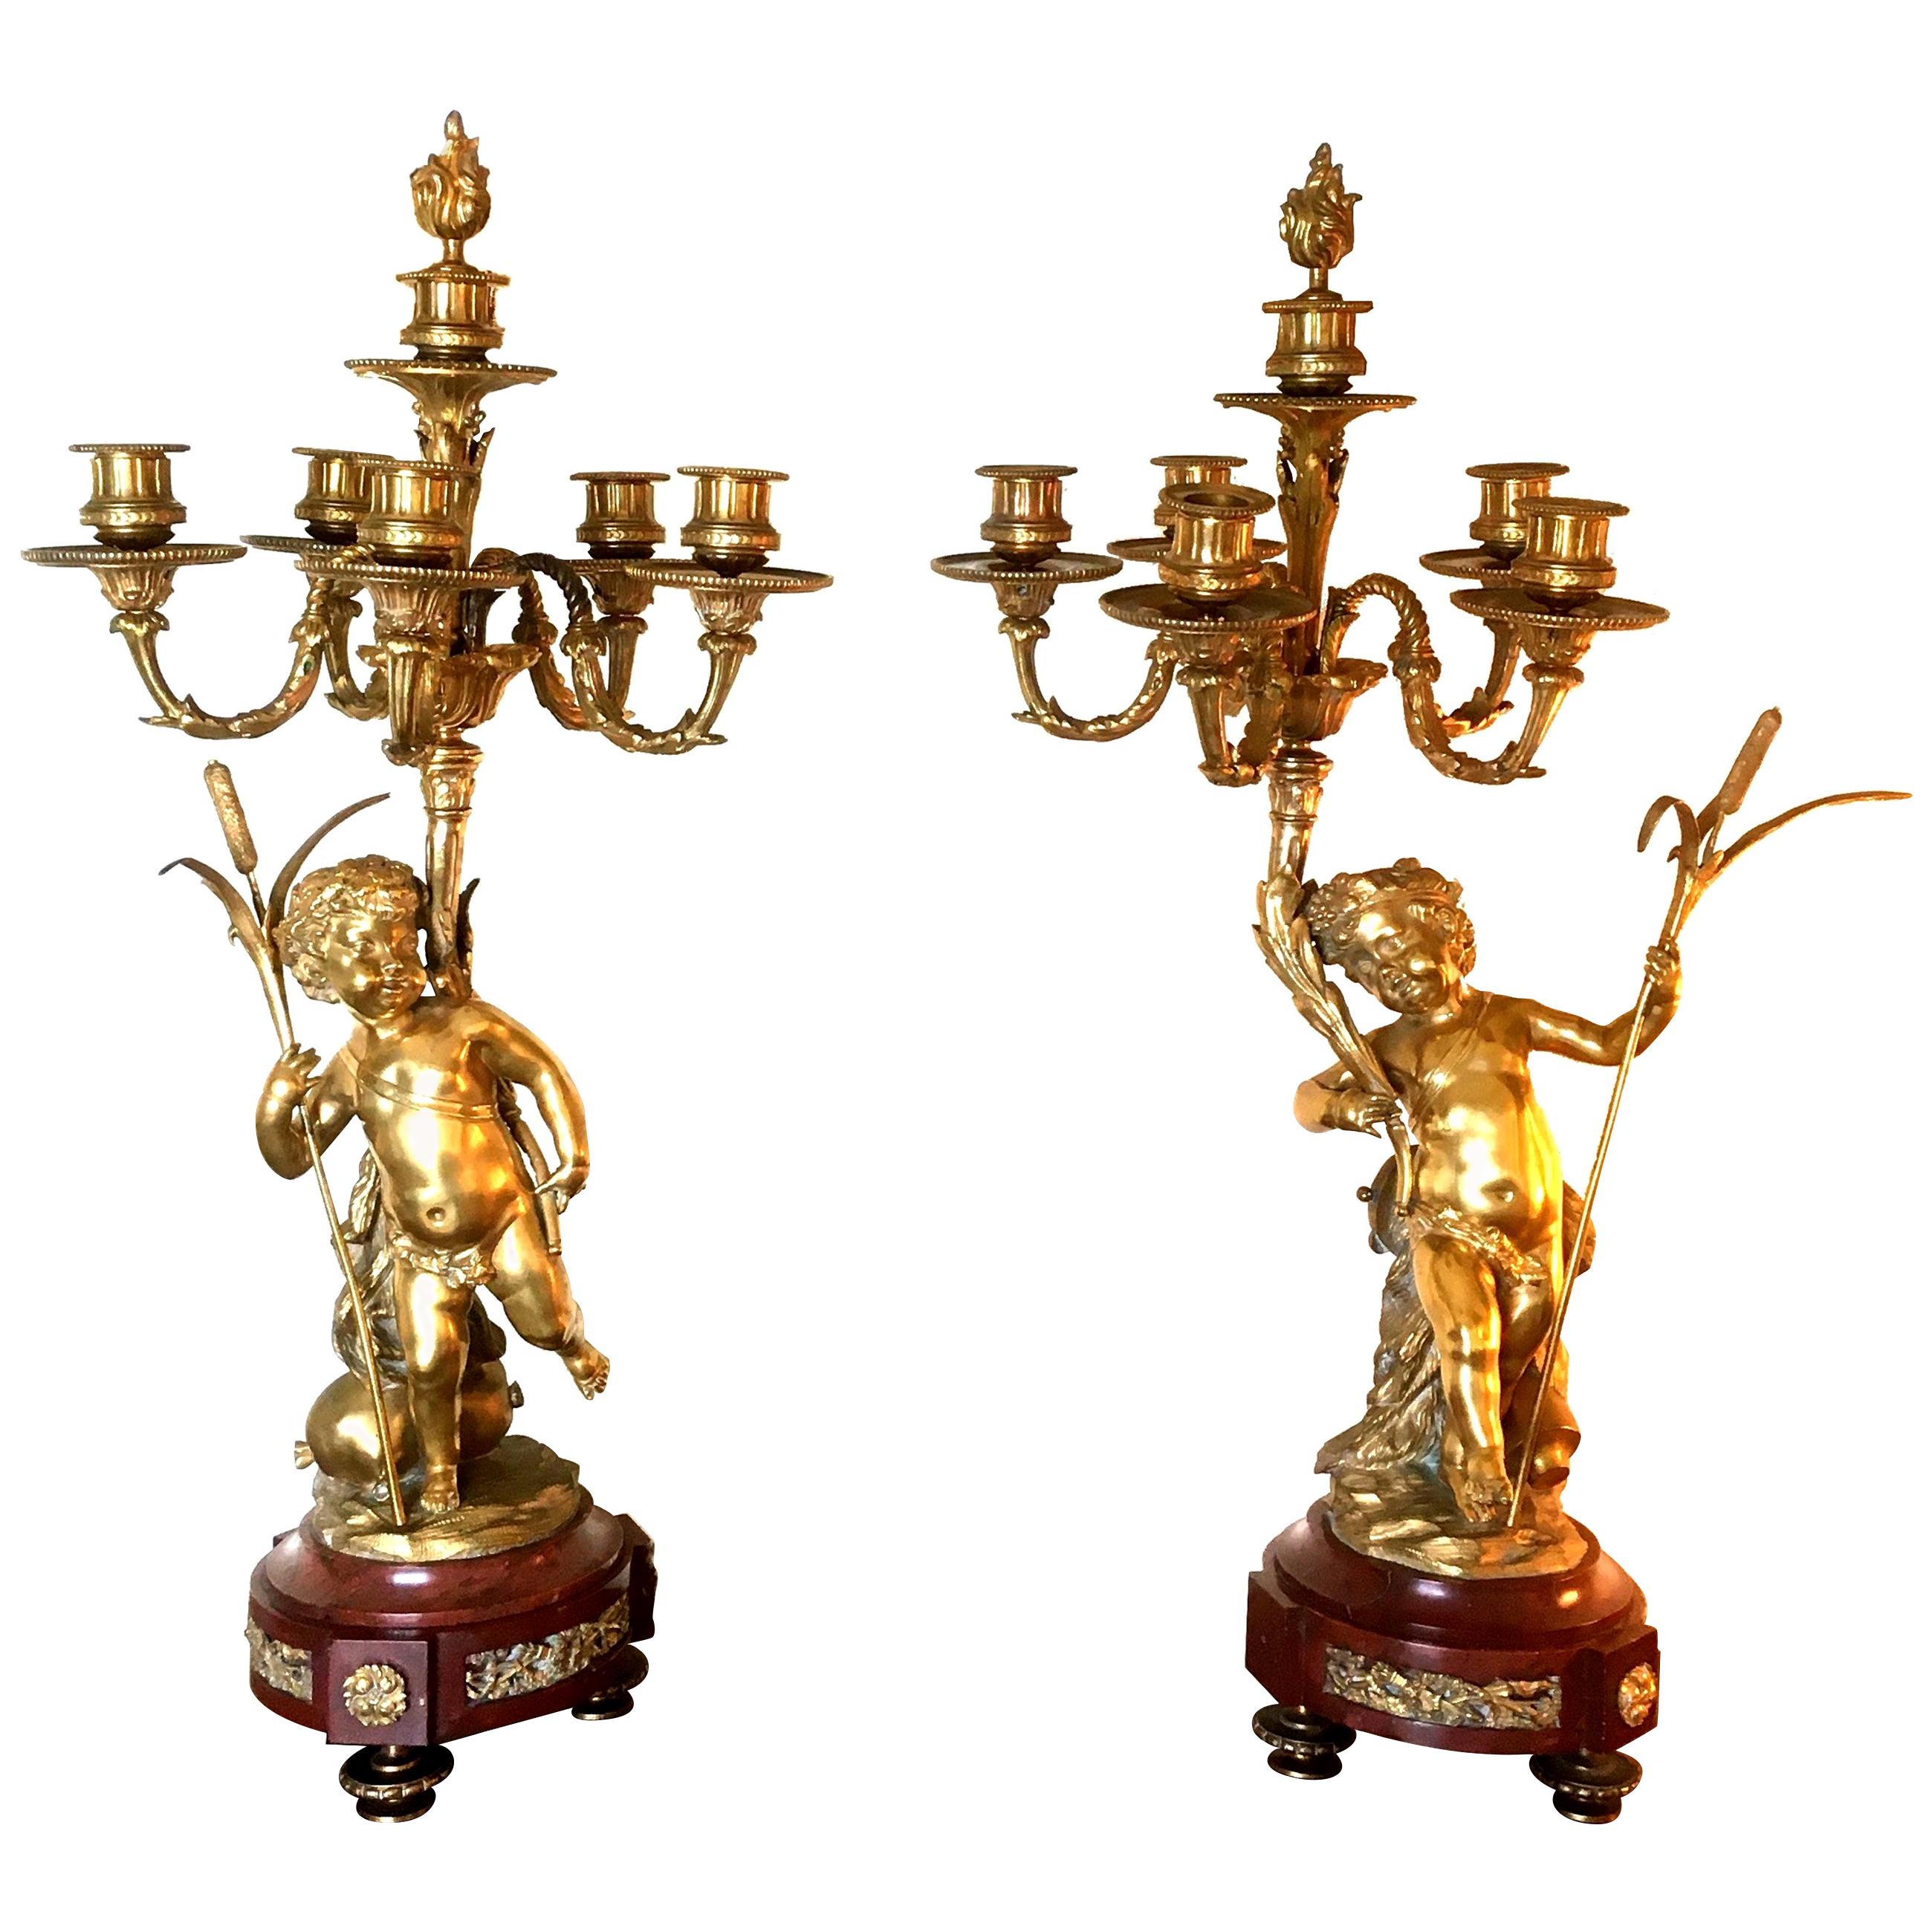 CLODION - Paire de candélabres en bronze doré et marbre rouge avec Putti - 19ème France